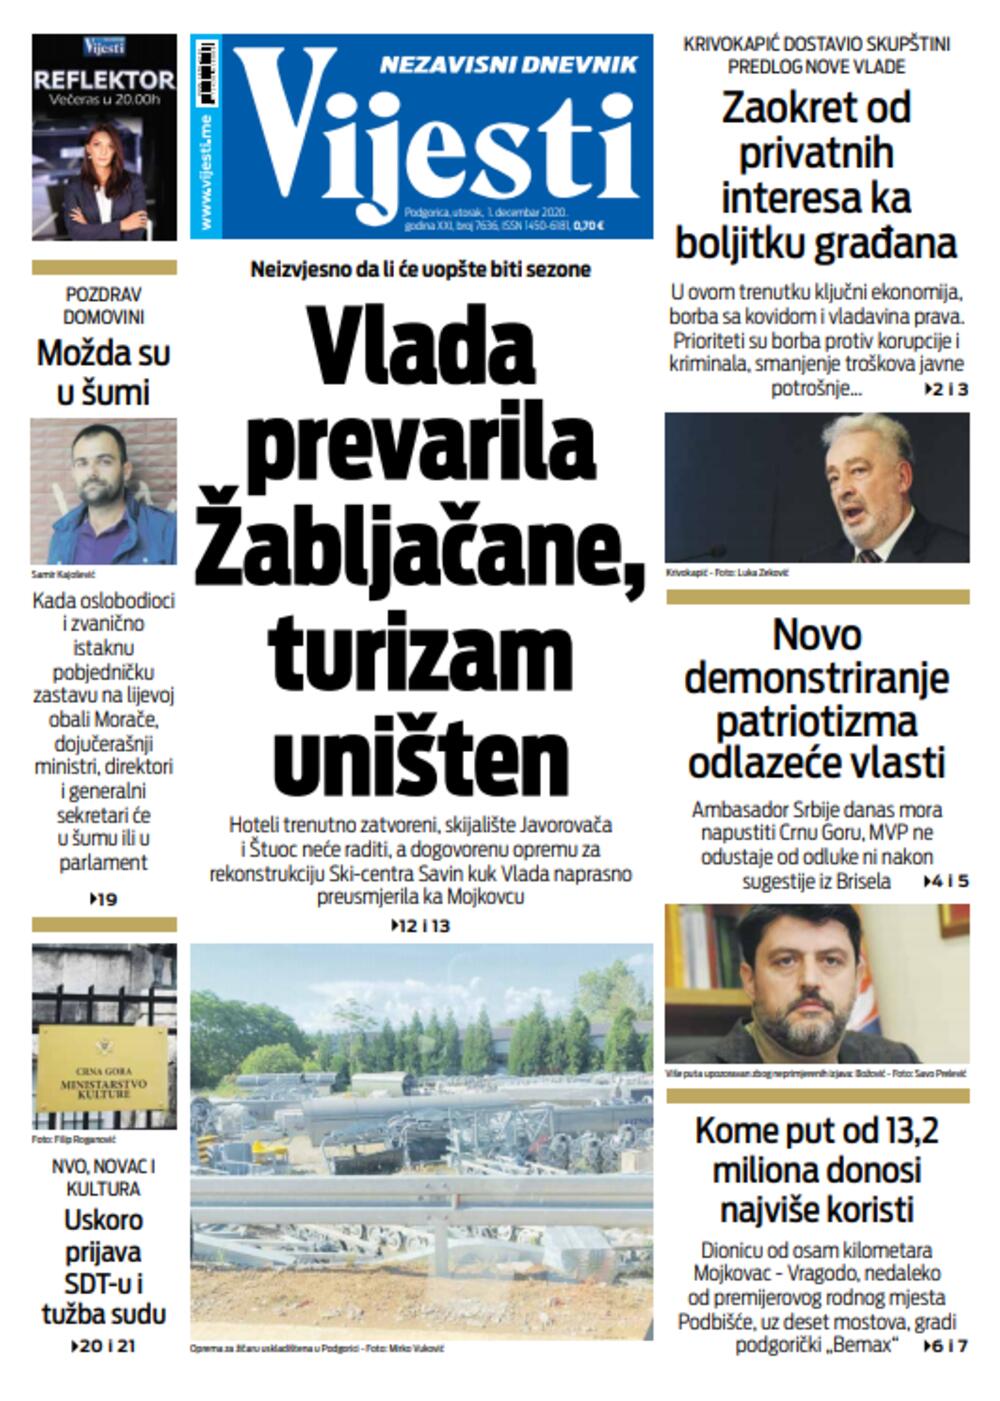 Naslovna strana "Vijesti" za prvi decembar, Foto: Vijesti